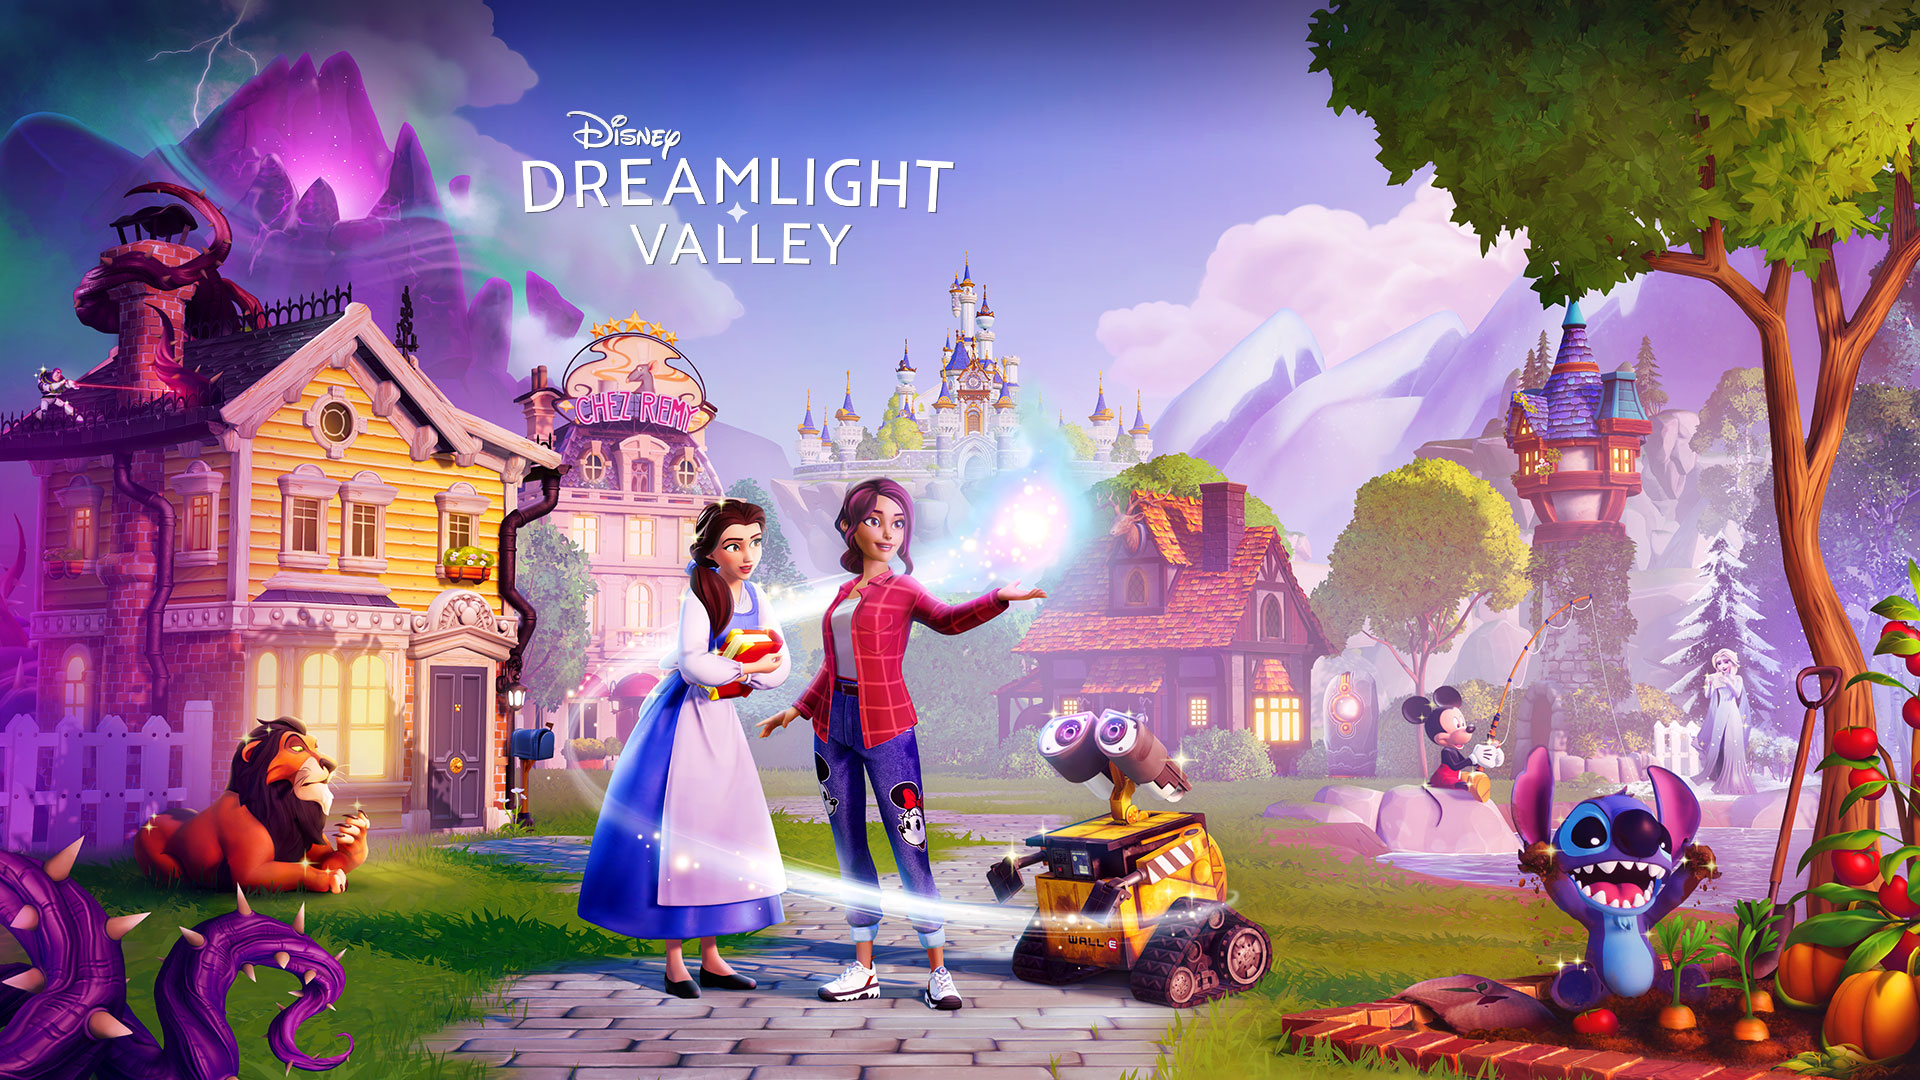 Disney Dreamlight Valley: Disney-karaktärer såsom Belle och Wall-E samlas runt en spelare i en pittoresk stad. 